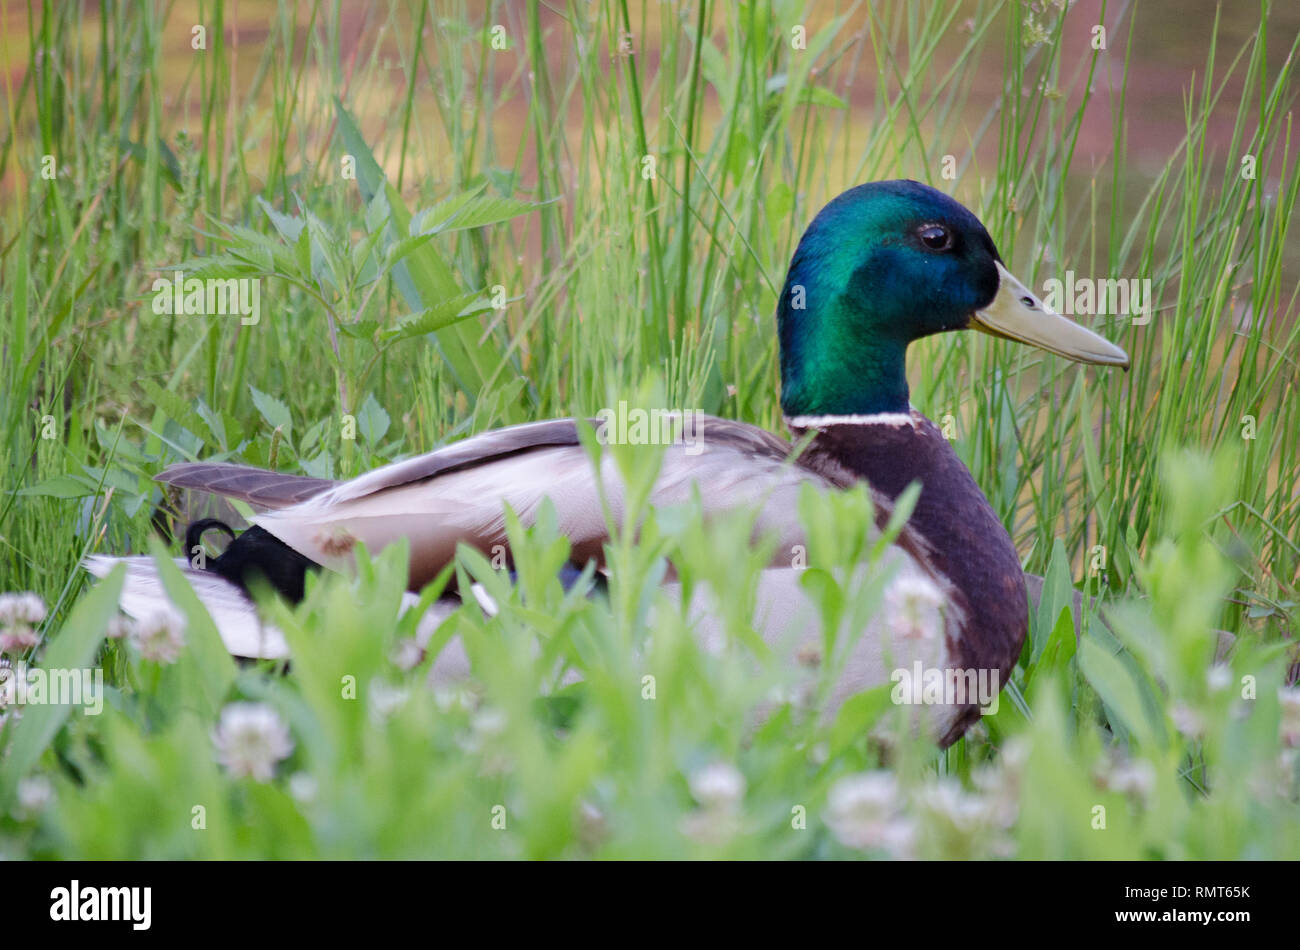 Stockente Ente Gans mit grünen und gelben Schnabel im grünen Gras FELD Stockfoto